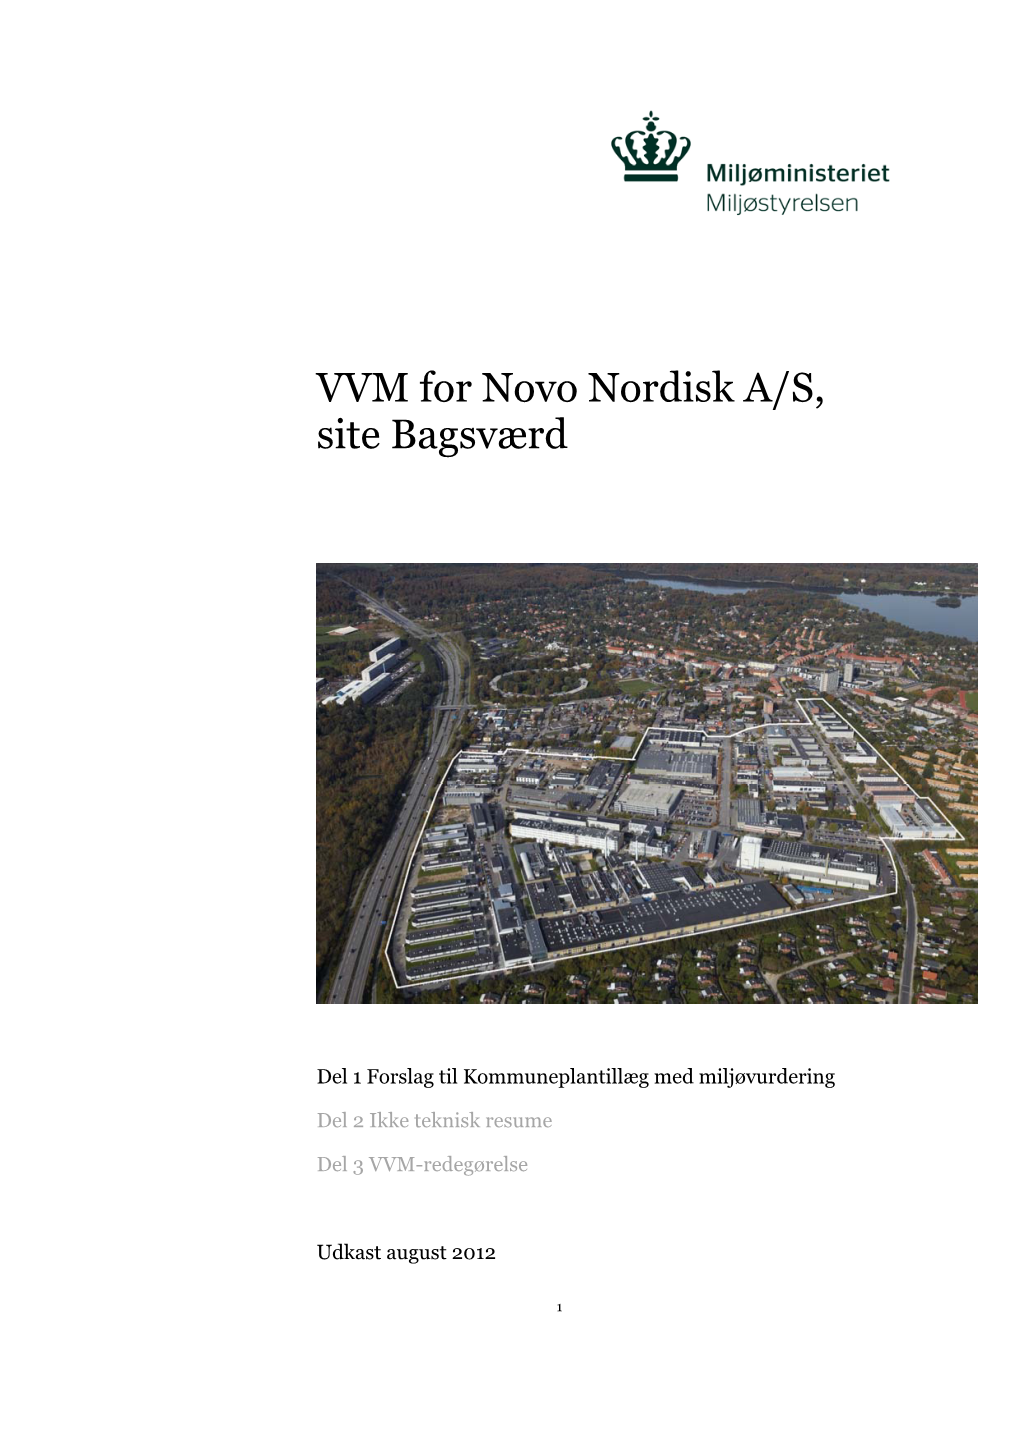 VVM for Novo Nordisk A/S, Site Bagsværd